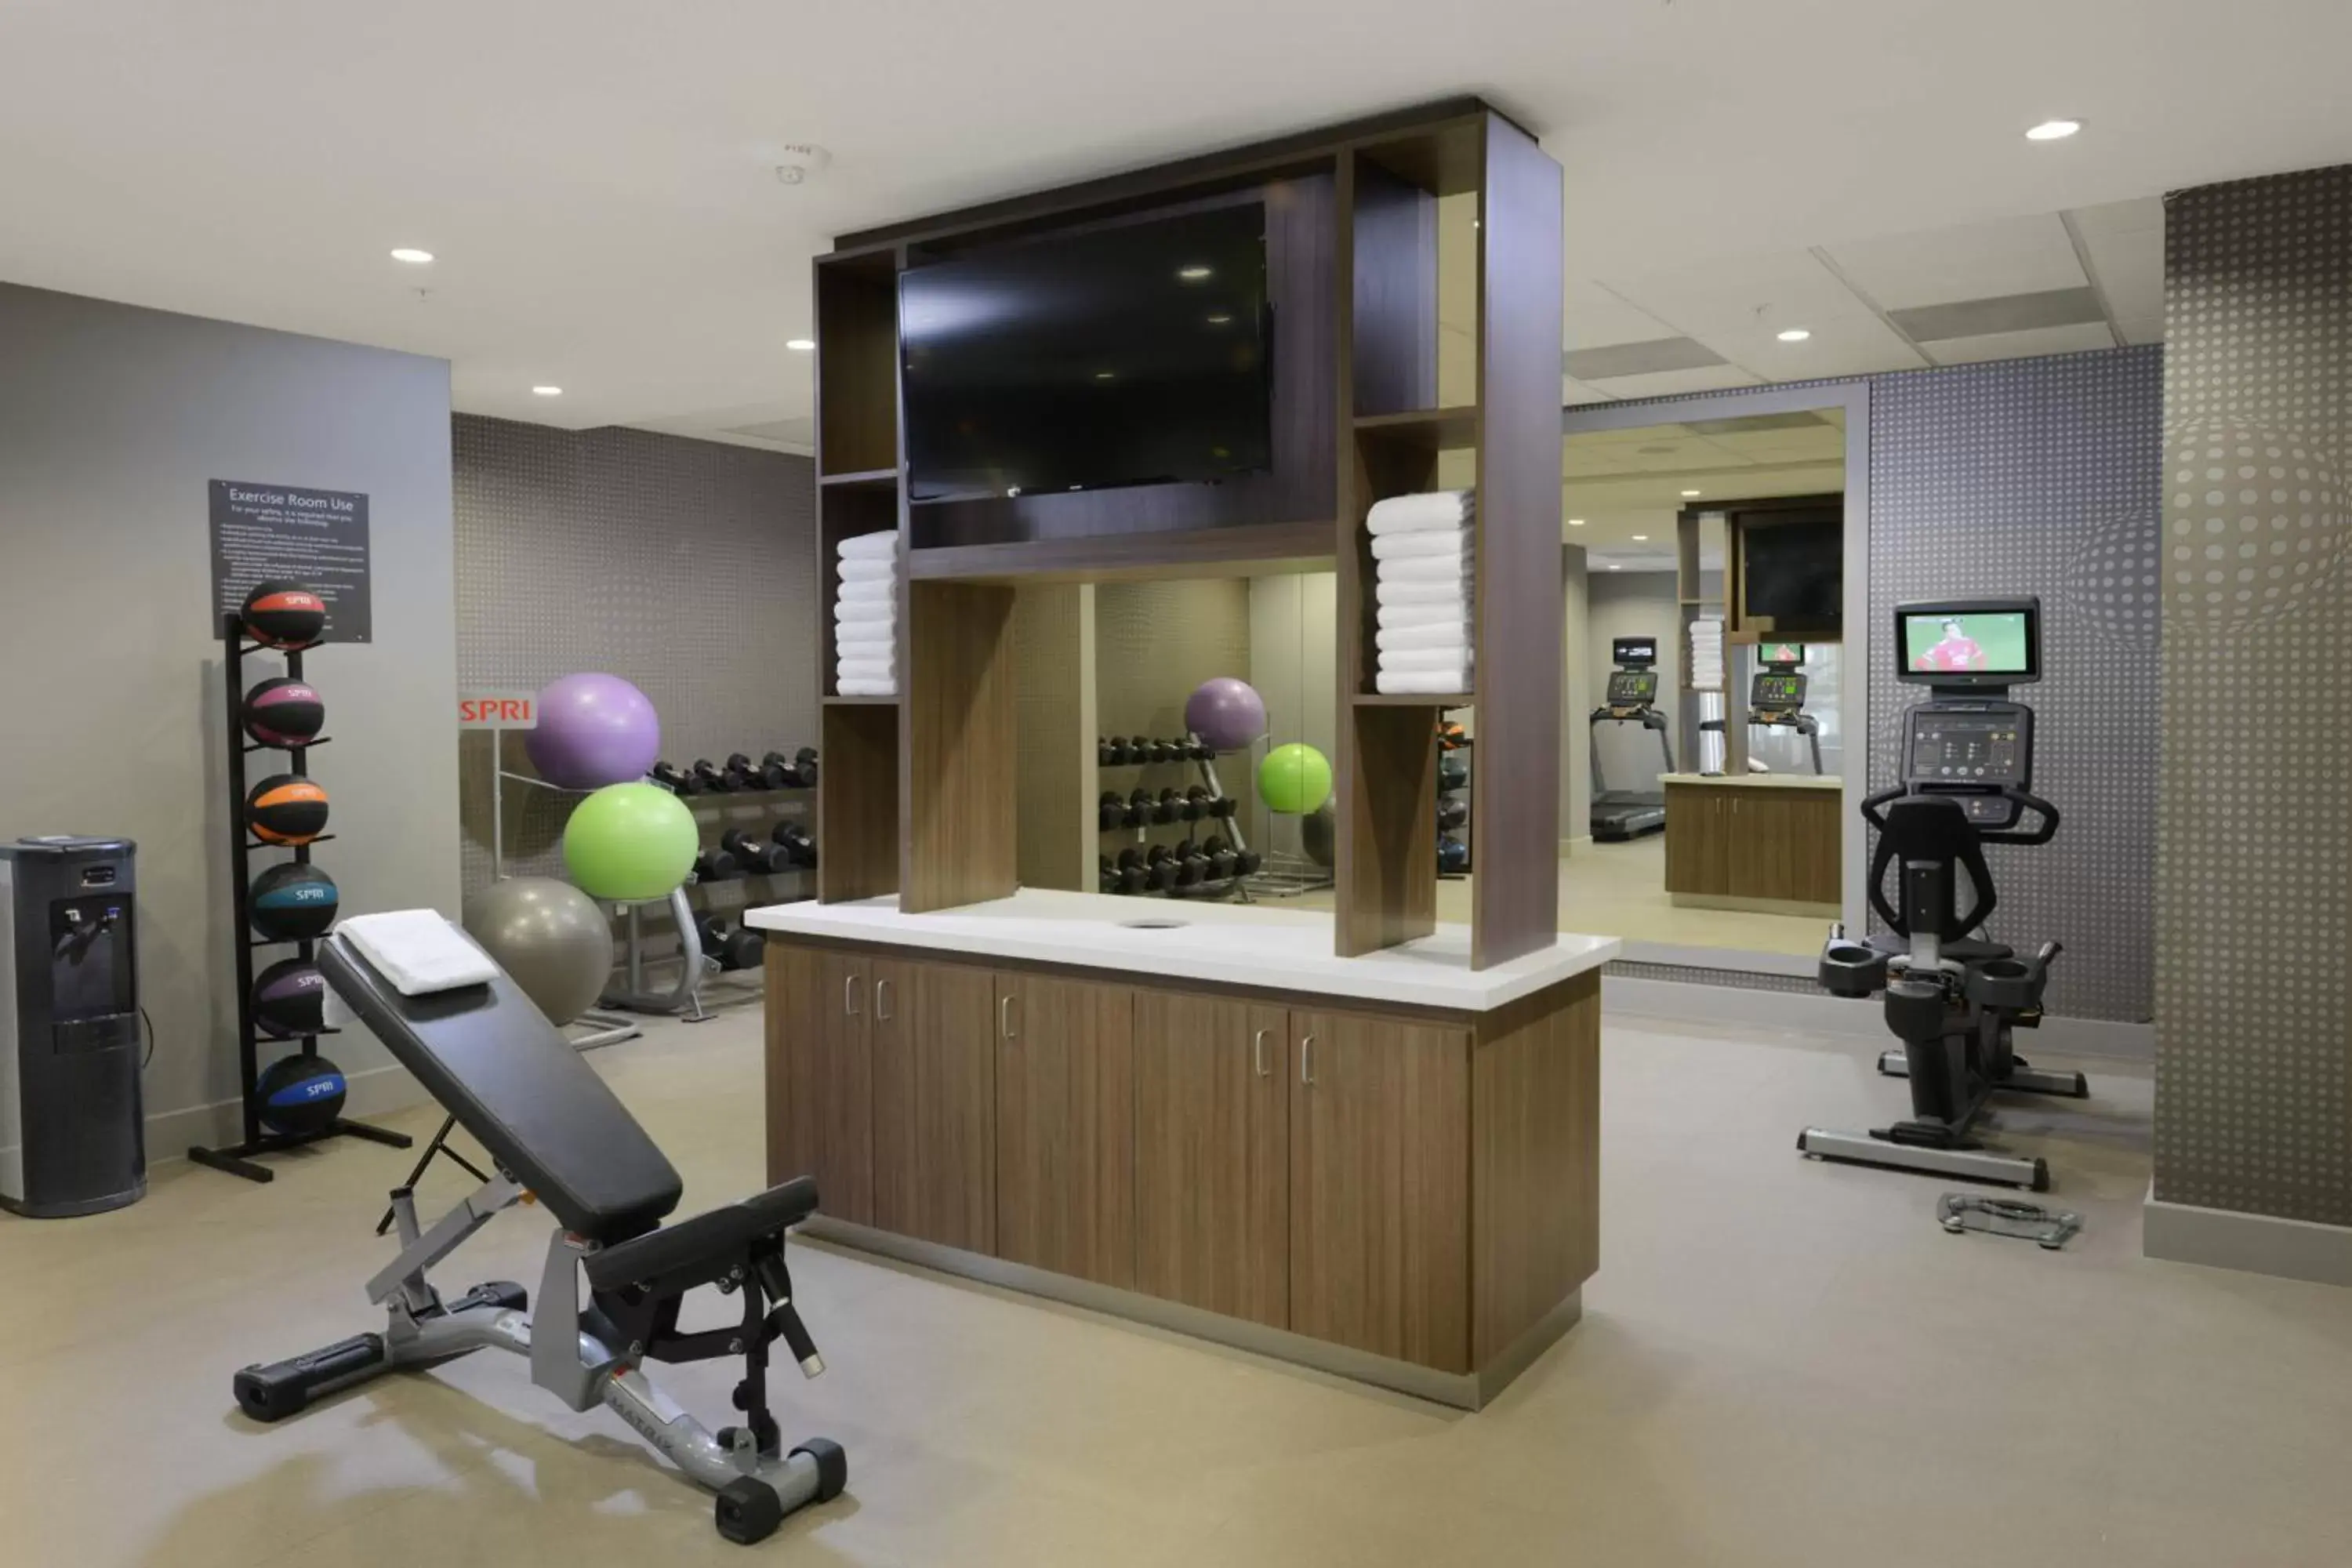 Fitness centre/facilities, Fitness Center/Facilities in Residence Inn by Marriott Denver Southwest/Littleton